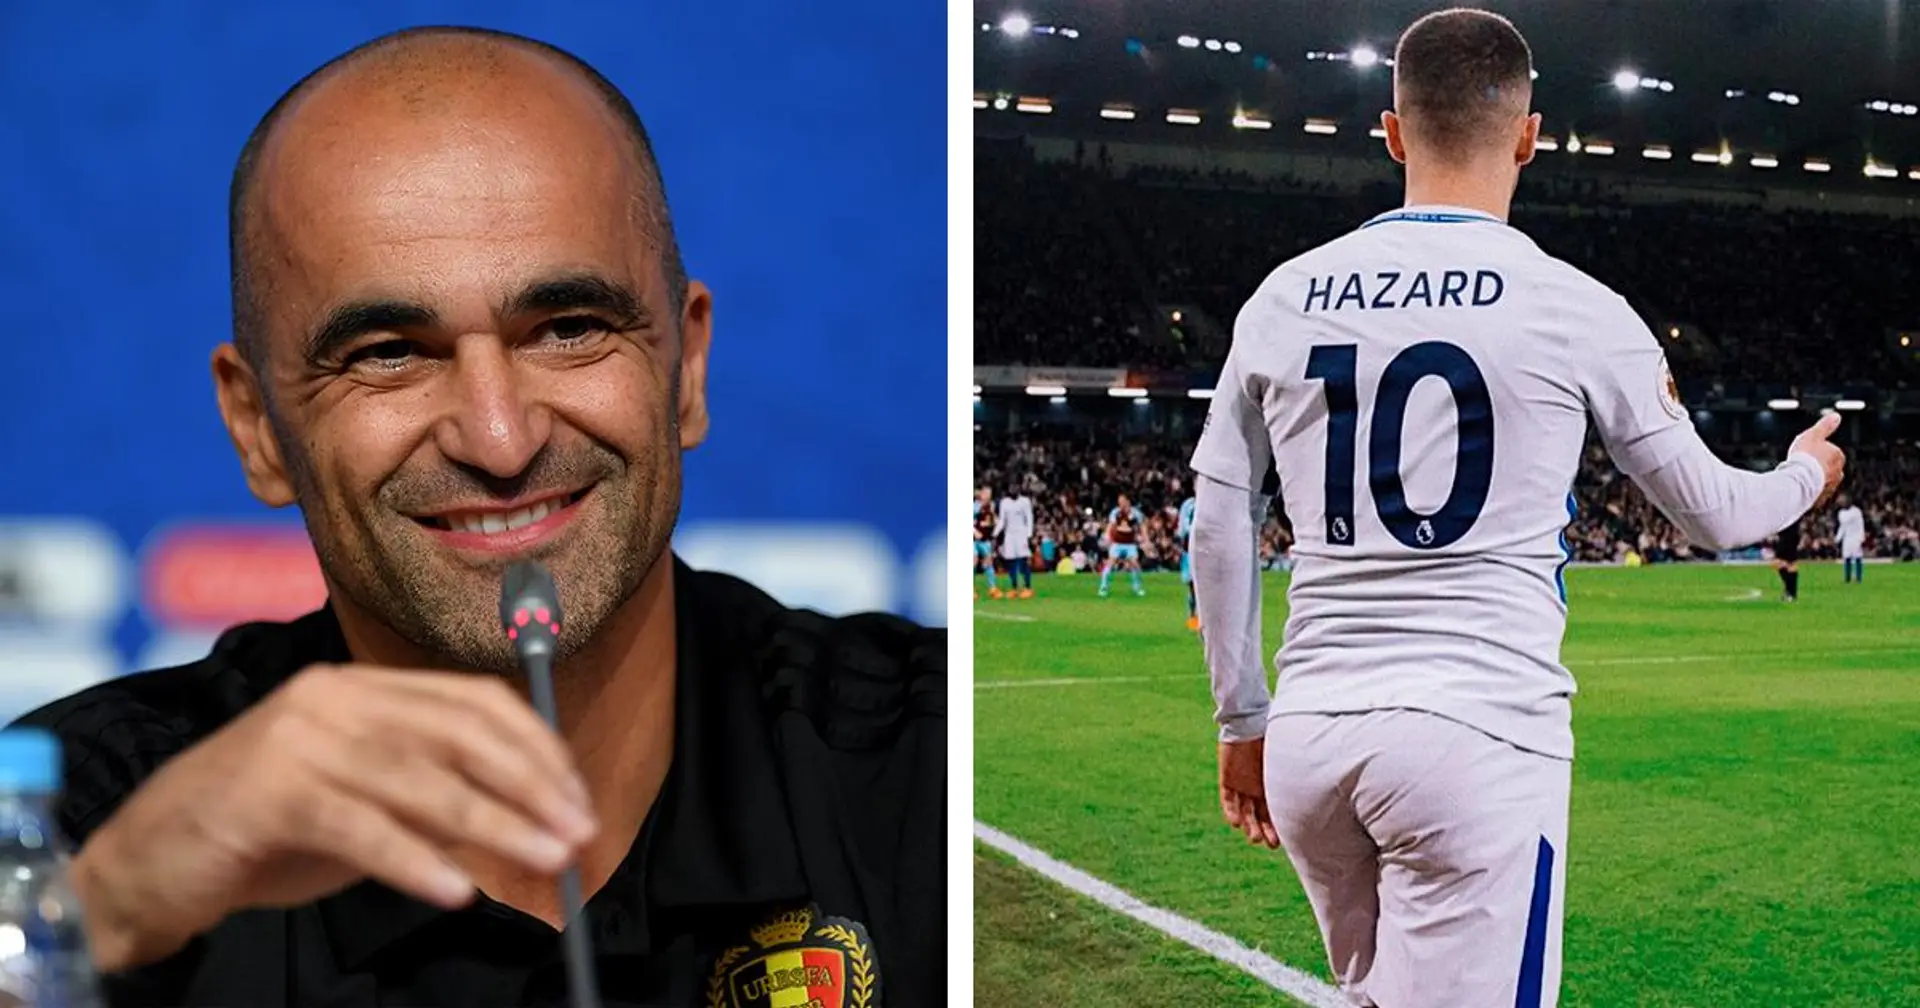 Quand Eden Hazard est en forme, ce n'est pas du tout grâce à ses fesses - selon le sélectionneur belge Roberto Martinez